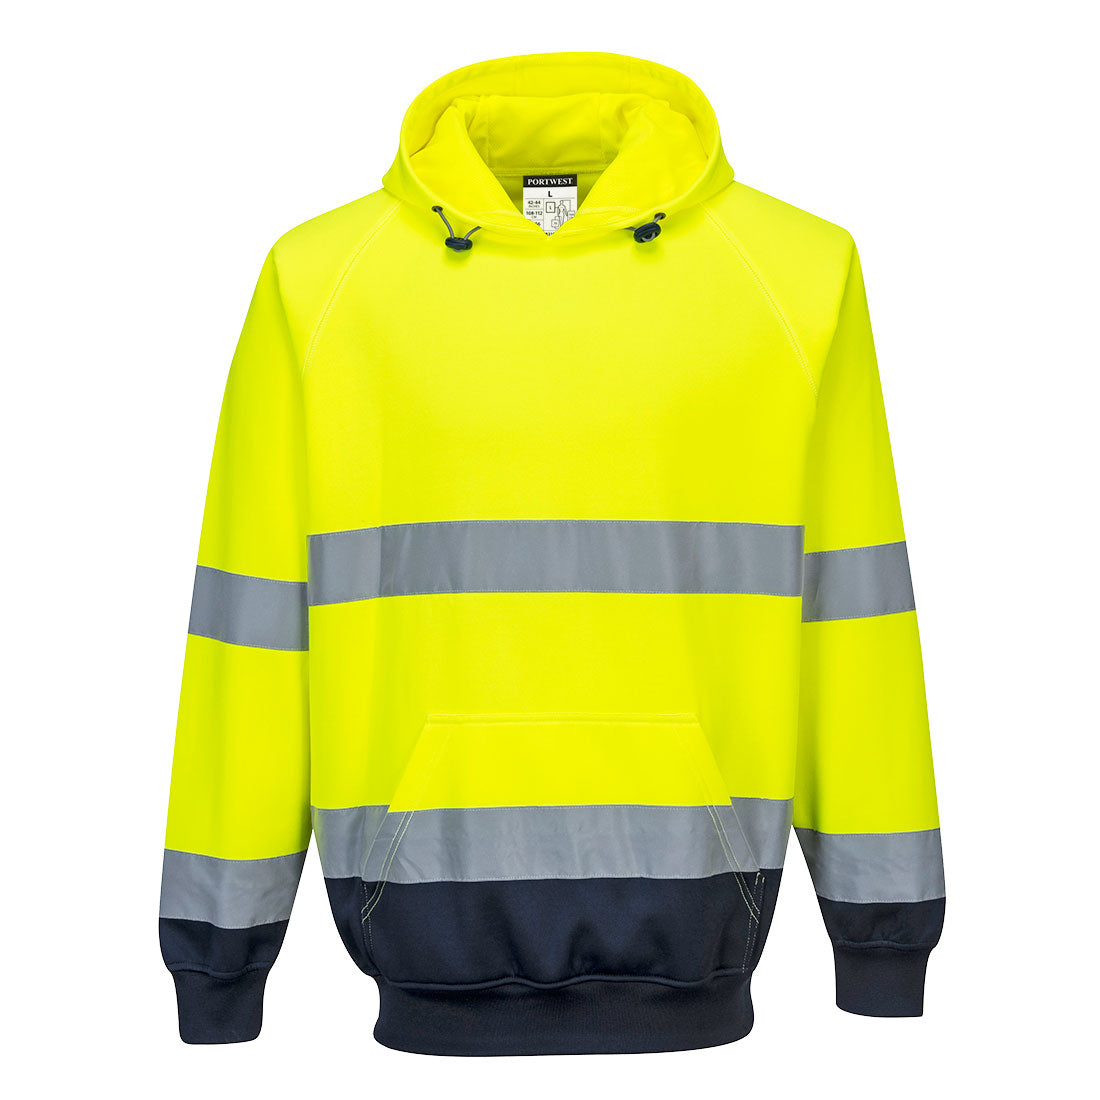 B316 - Two-Tone Hooded Sweatshirt Yellow/Navy FRONT